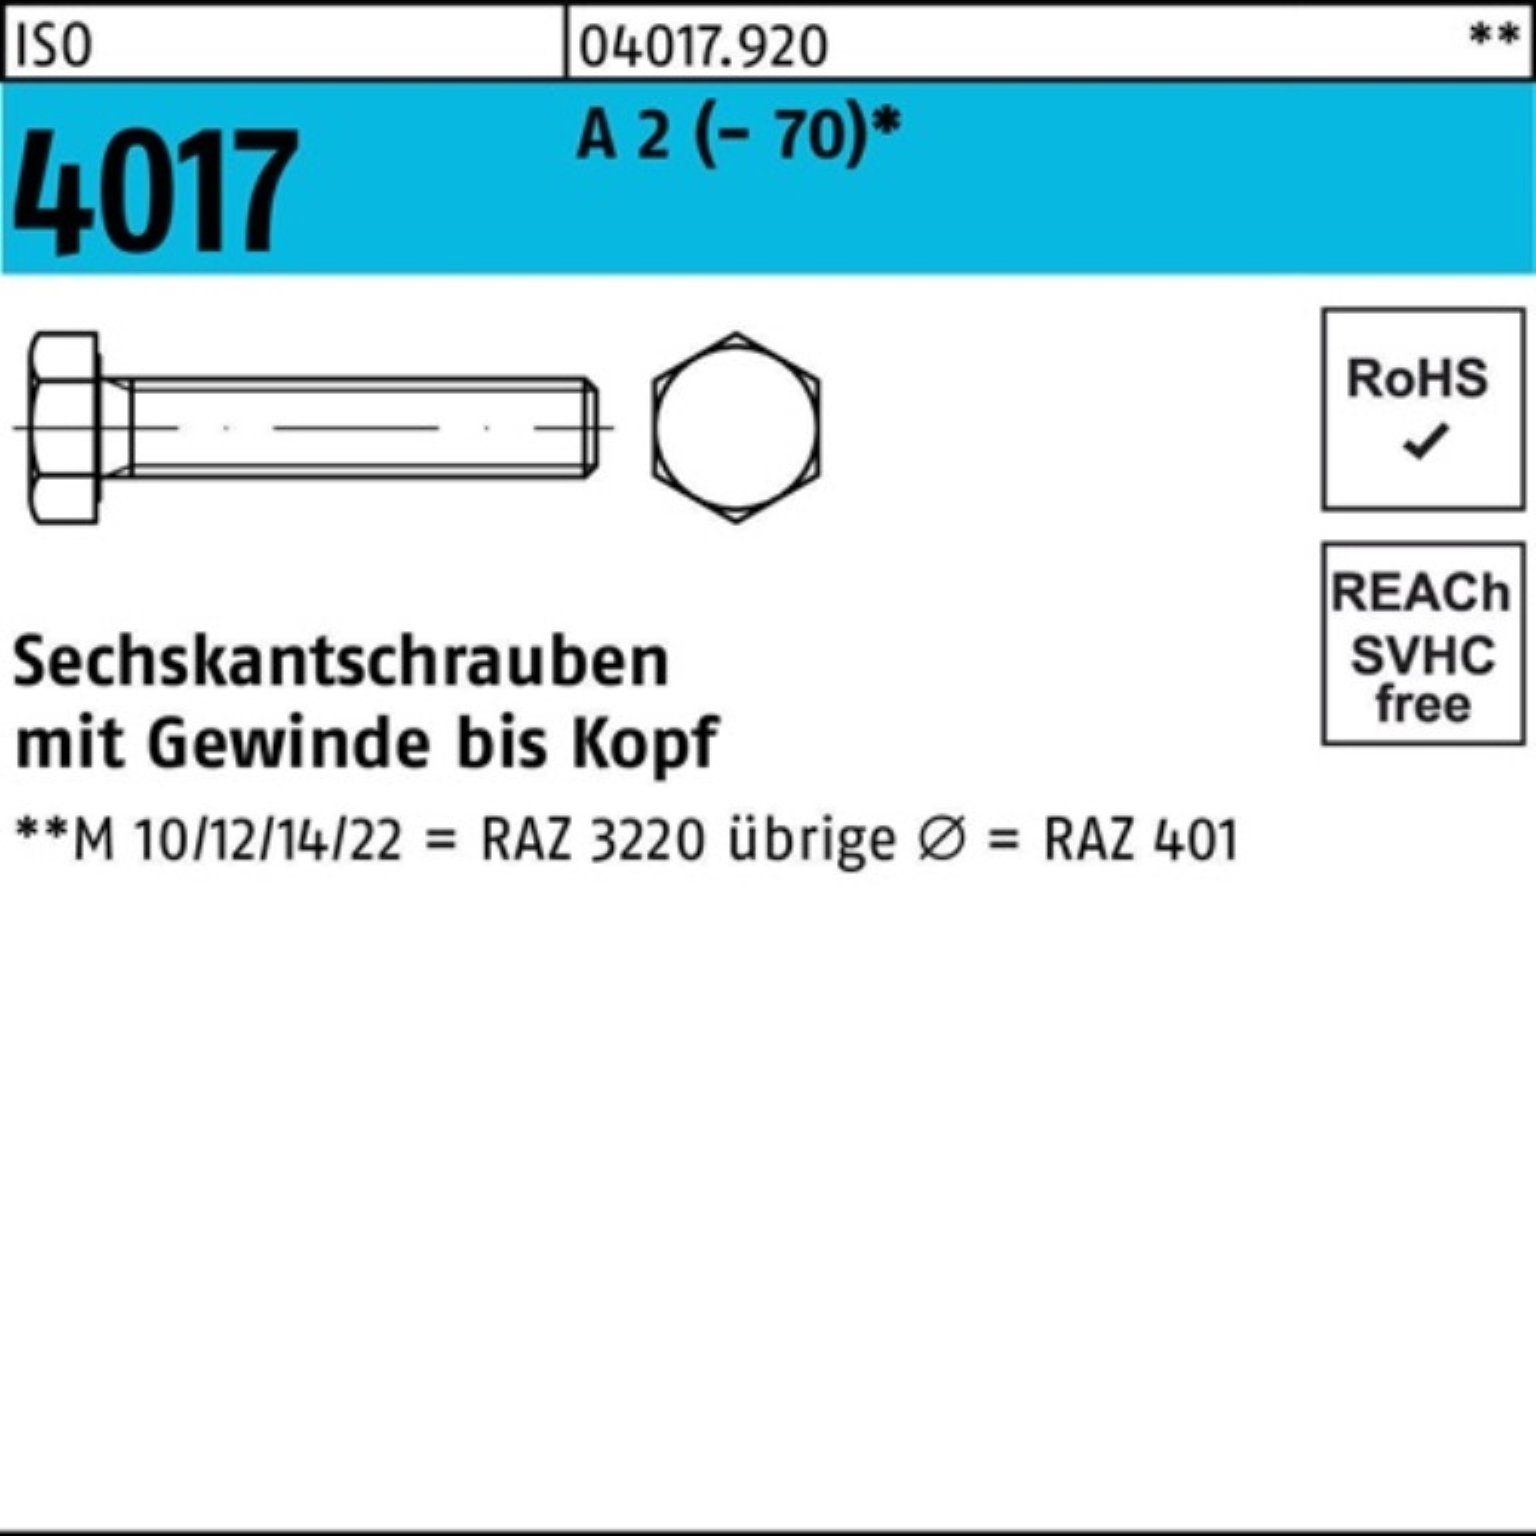 Bufab Sechskantschraube 100er Pack Sechskantschraube ISO 4017 VG M10x 60 A 2 (70) 100 Stück